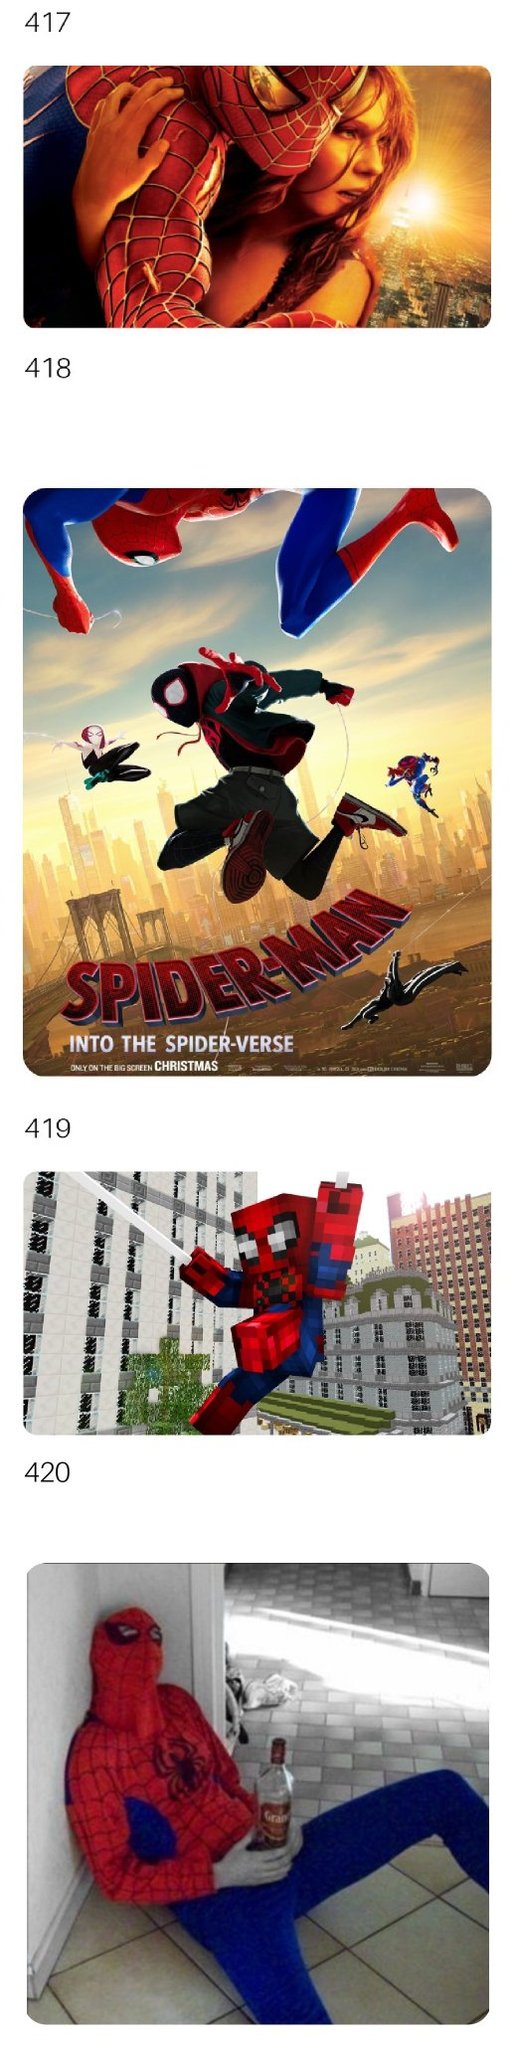 Evolución Spider-Man - meme